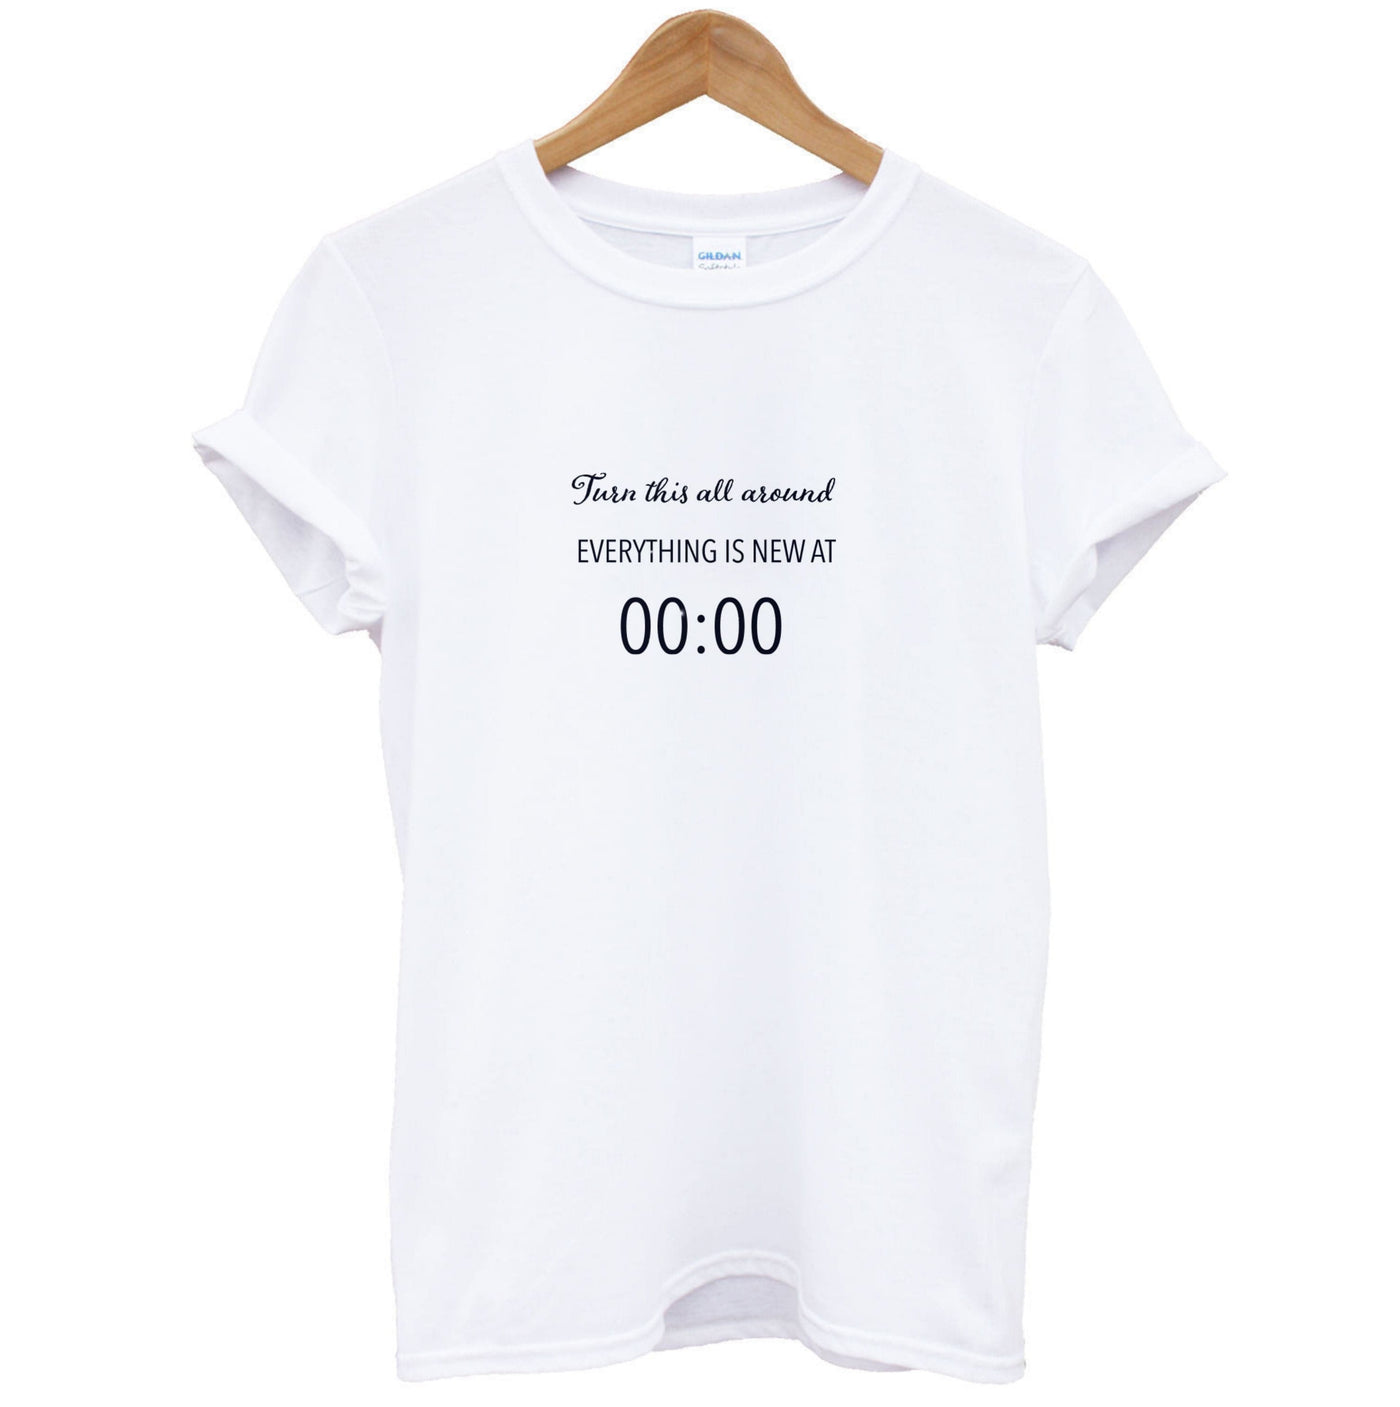 When The Clock Strikes Midnight - BTS T-Shirt